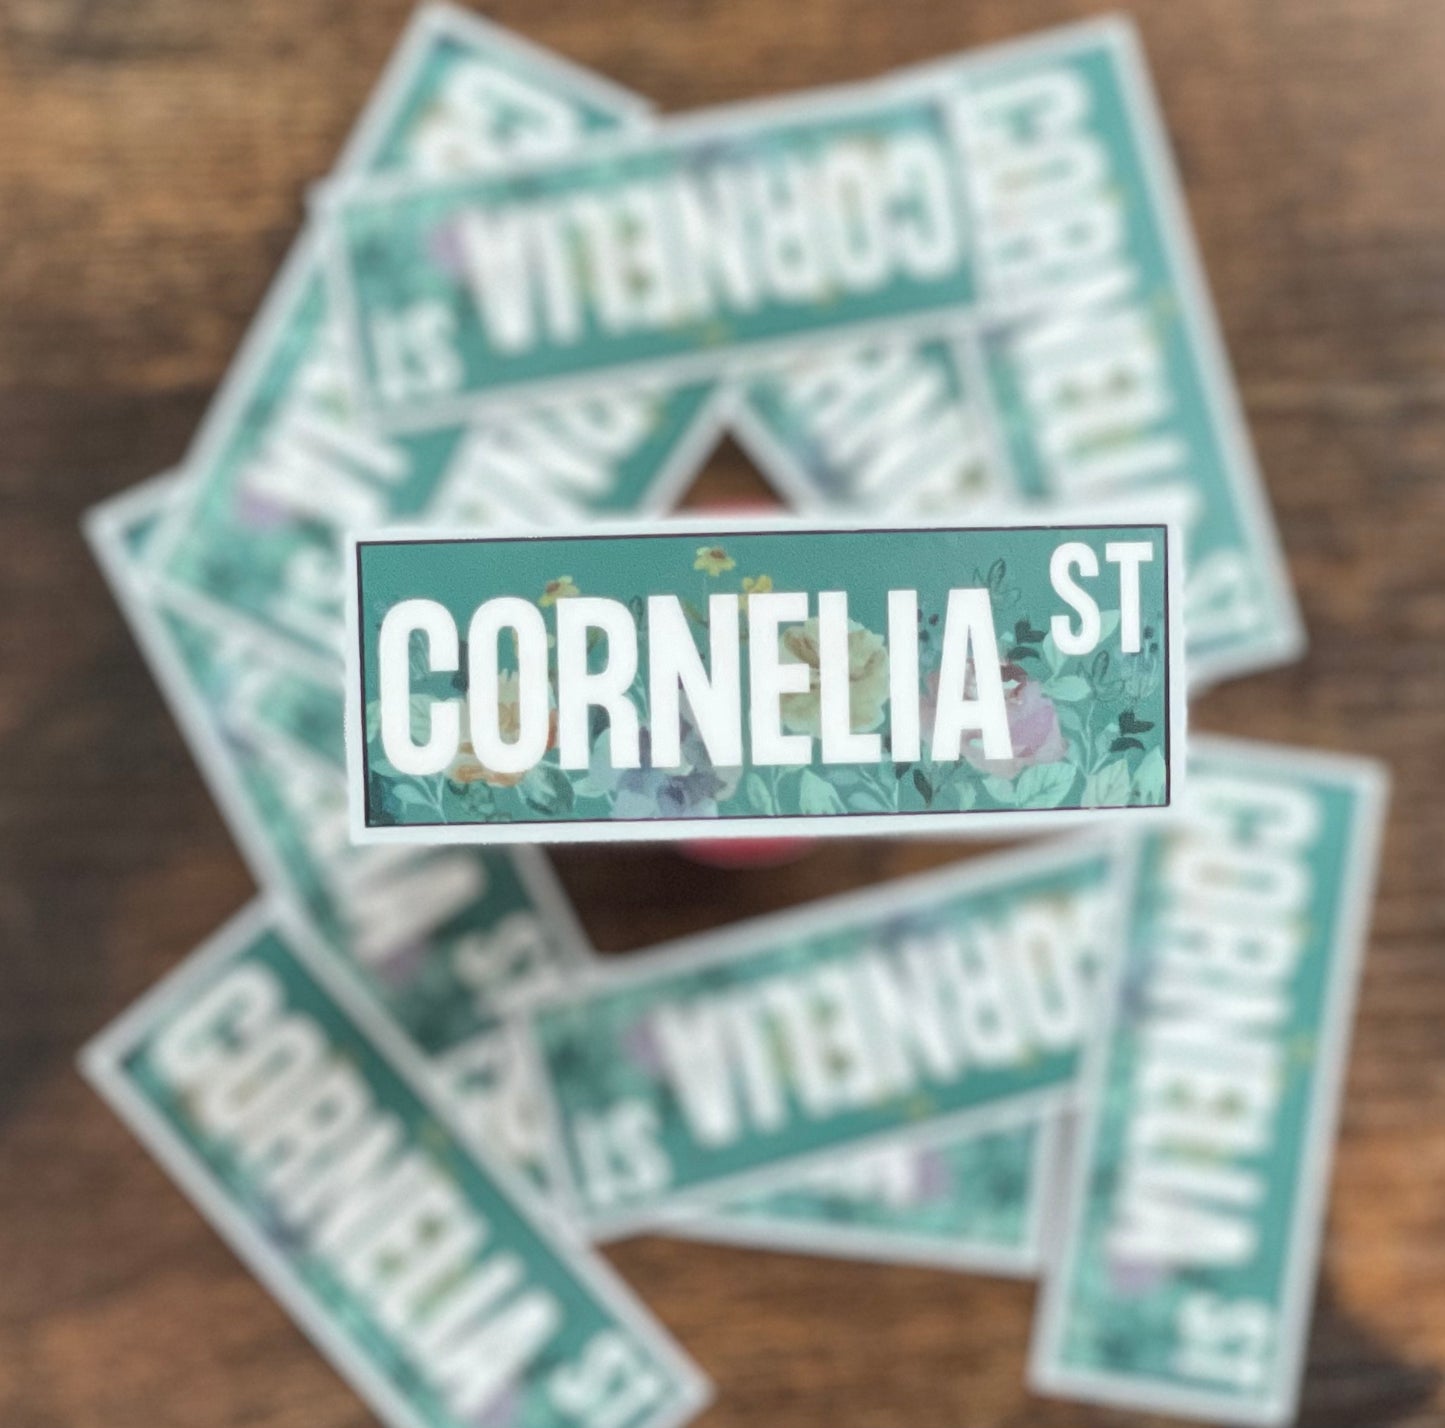 Cornelia Street Sign Sticker